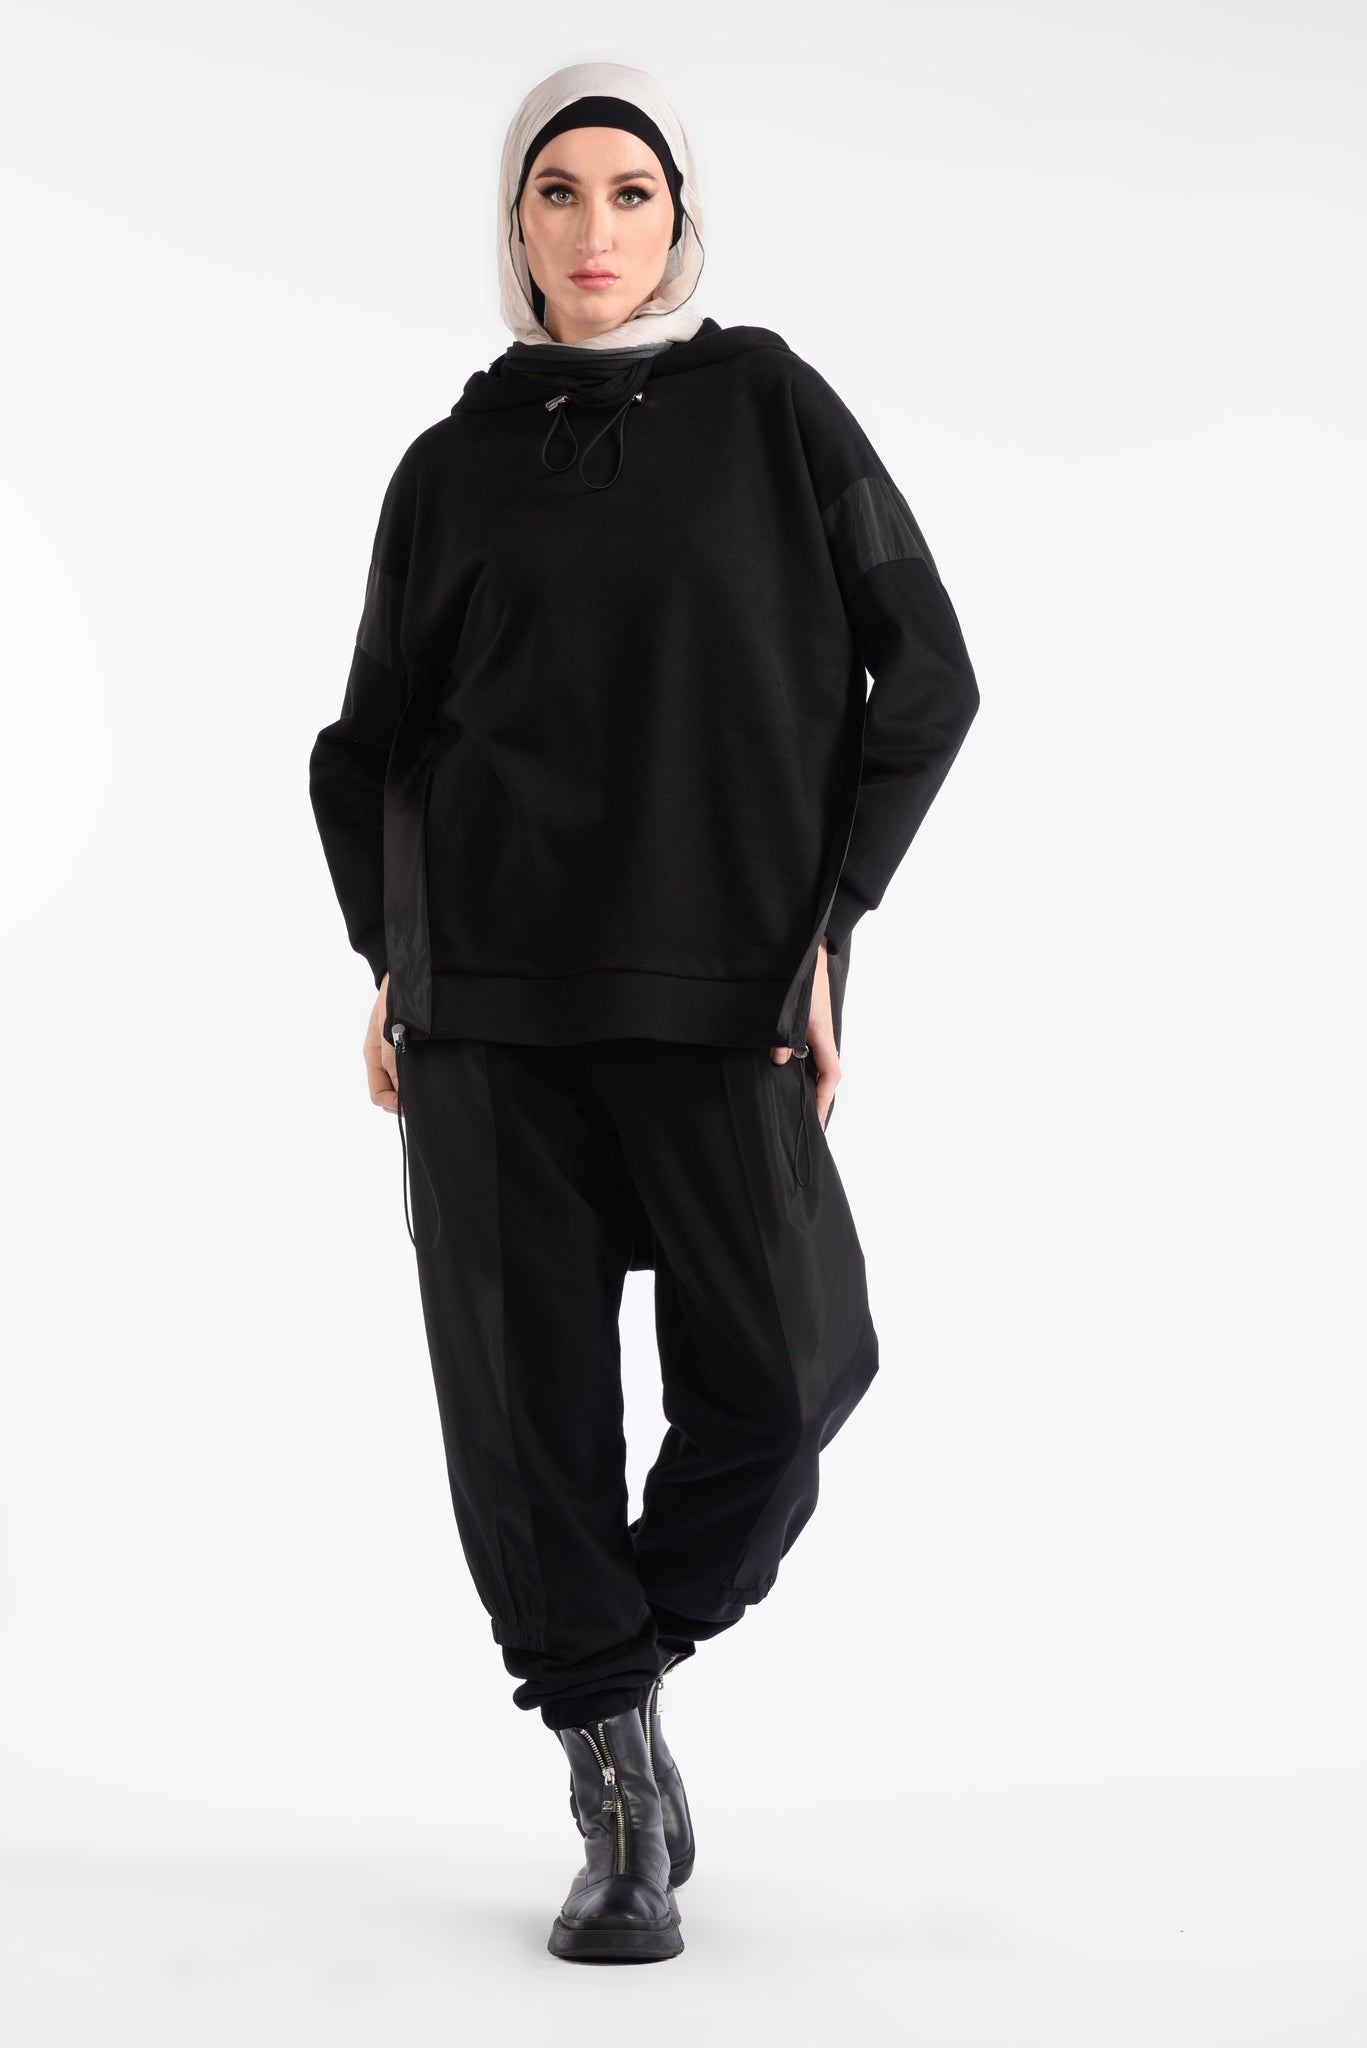 Black Hooded Color-Blocked Long Sleeve Sweatshirtac